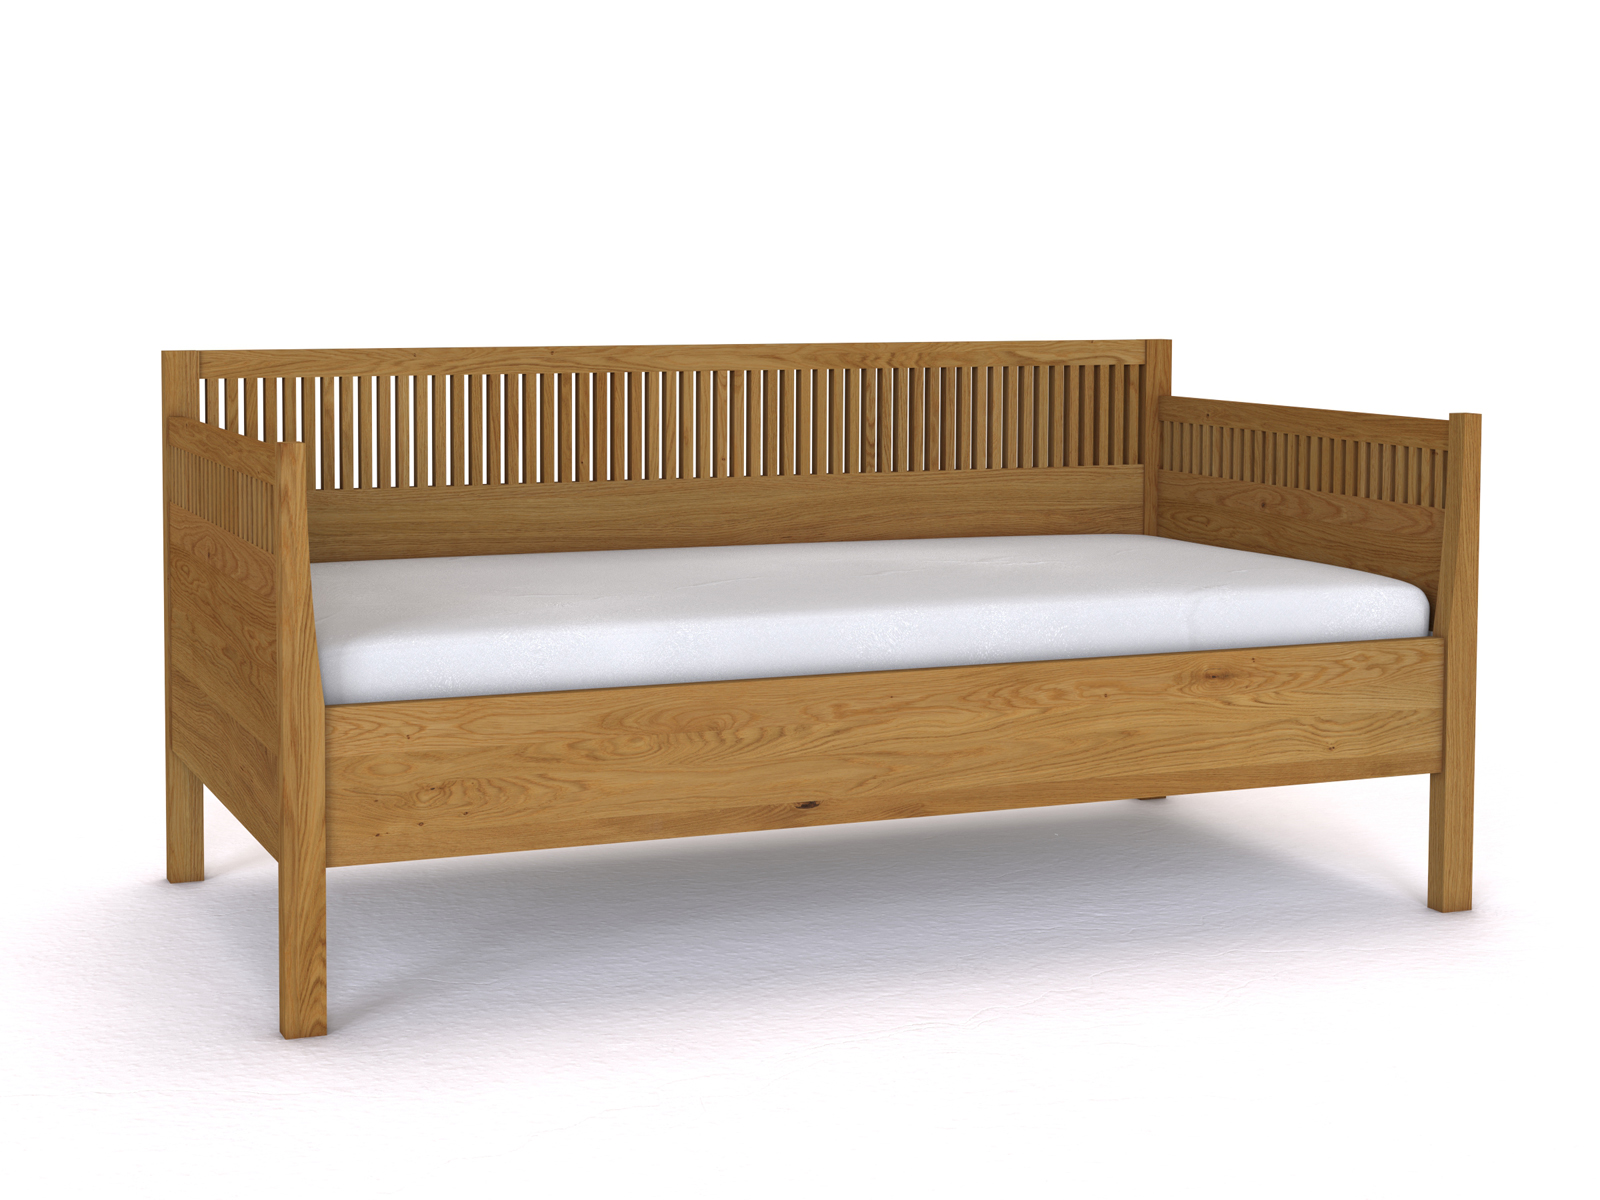 Sofabett „Julia“ aus Eiche in den Maßen 90 x 200 cm - mit zwei Armlehnen